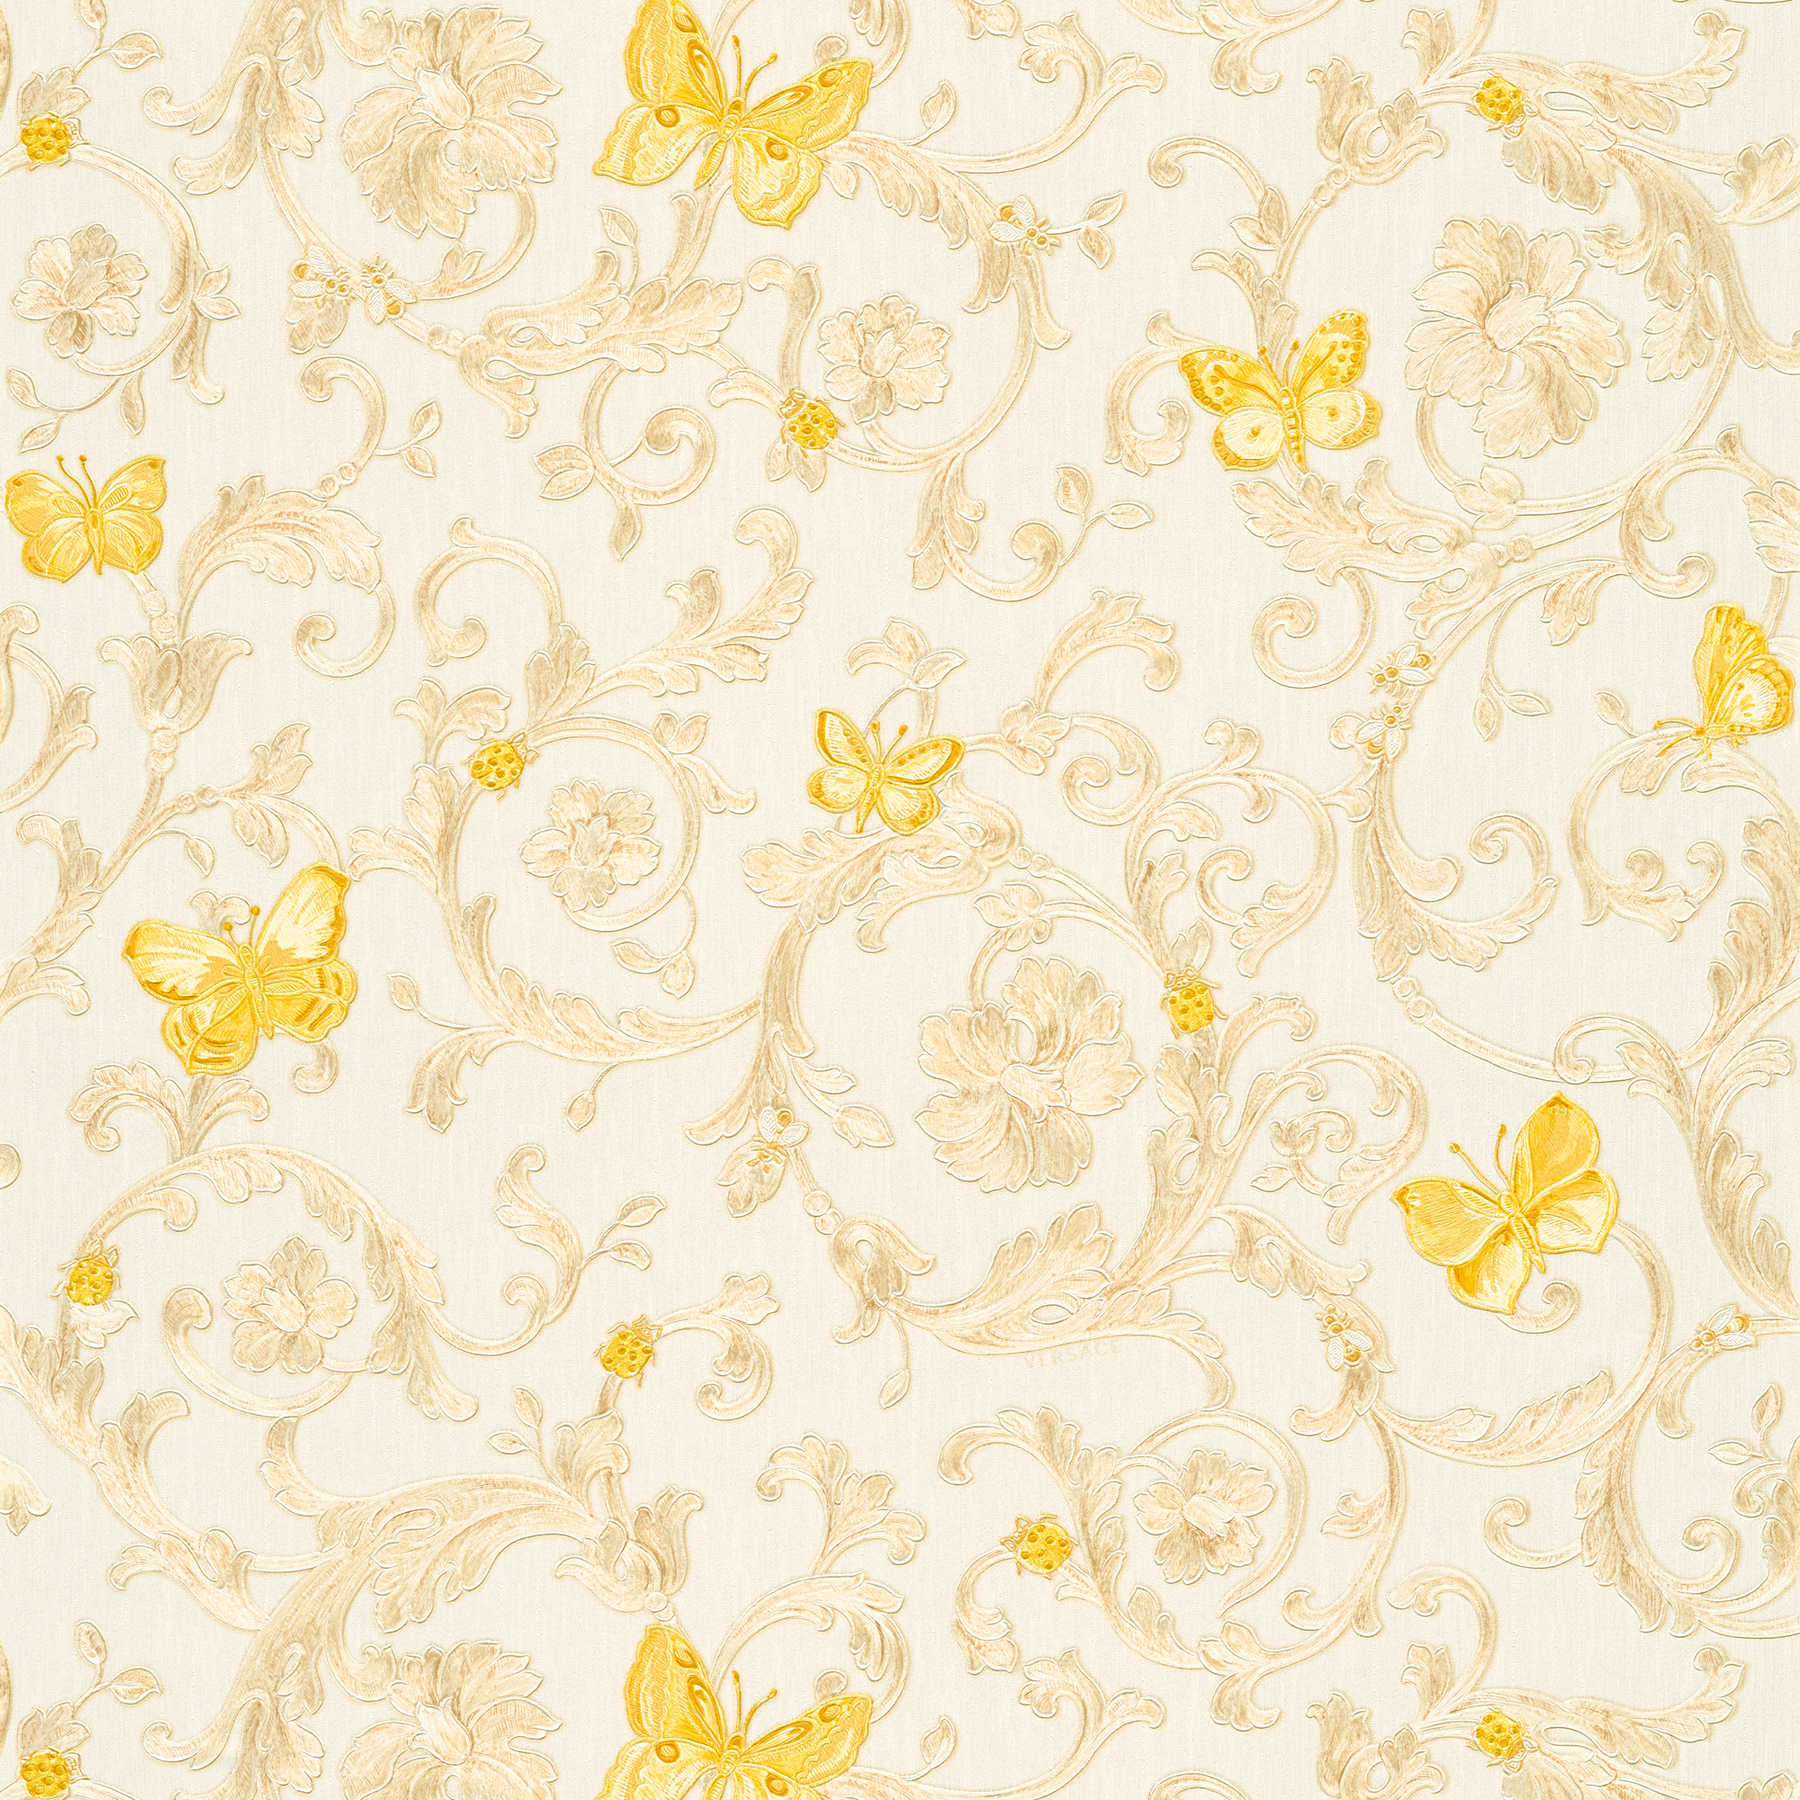 Vliesbehang VERSACE met goudpatroon & vlinders - crème, goud
